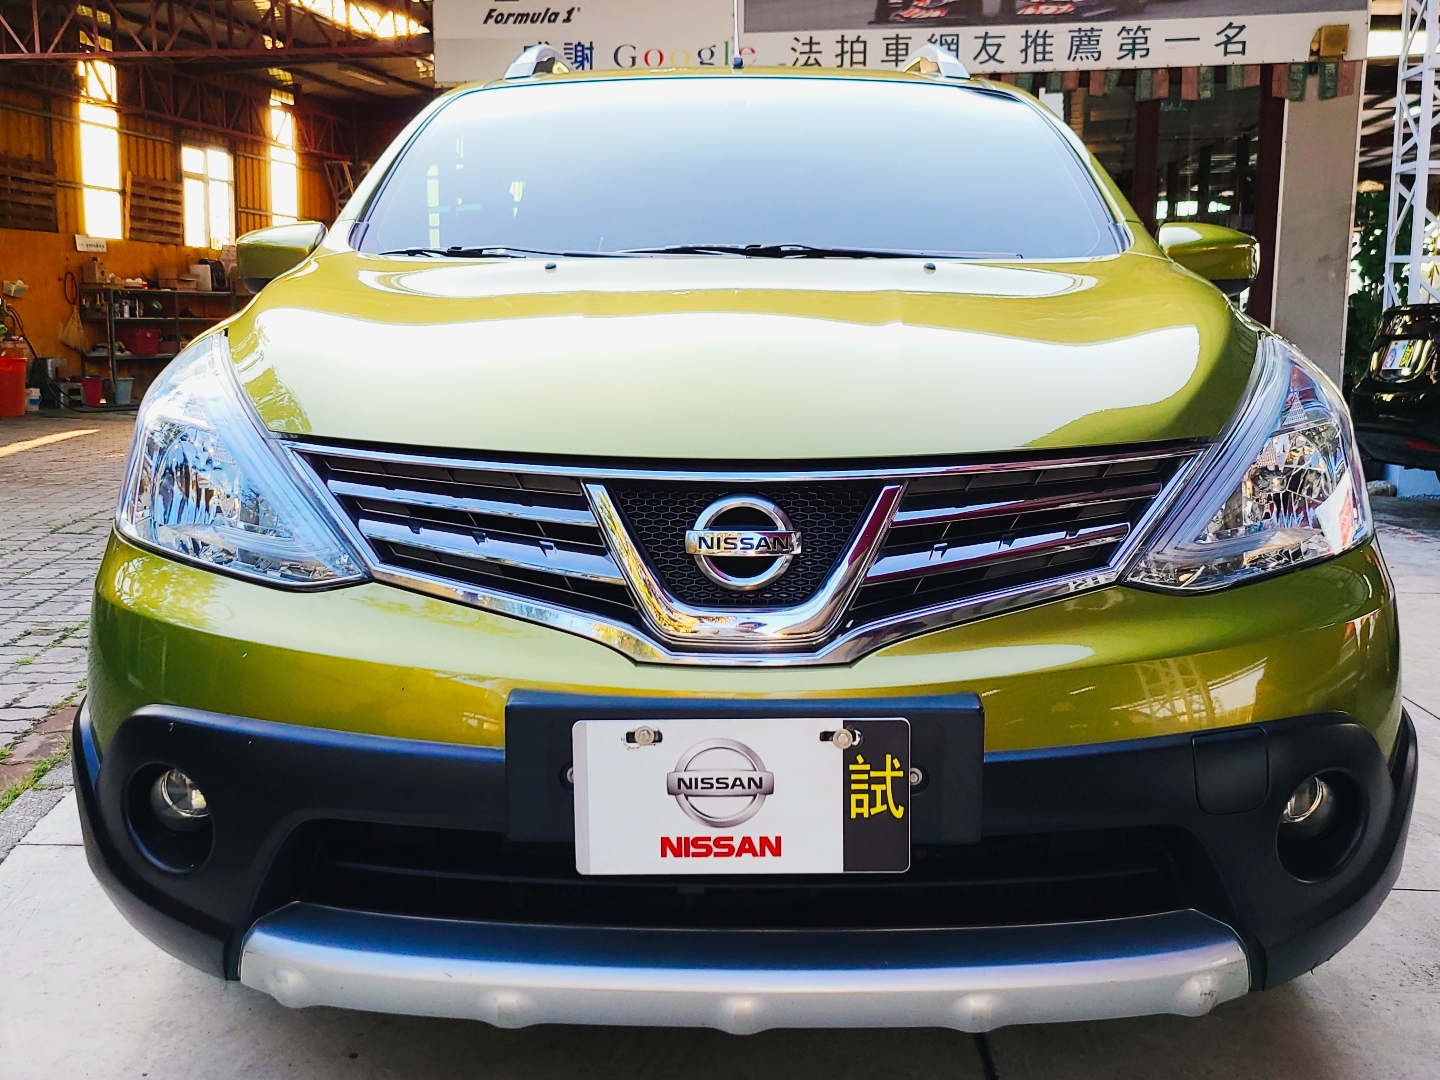 2014年Nissan 日產Livina